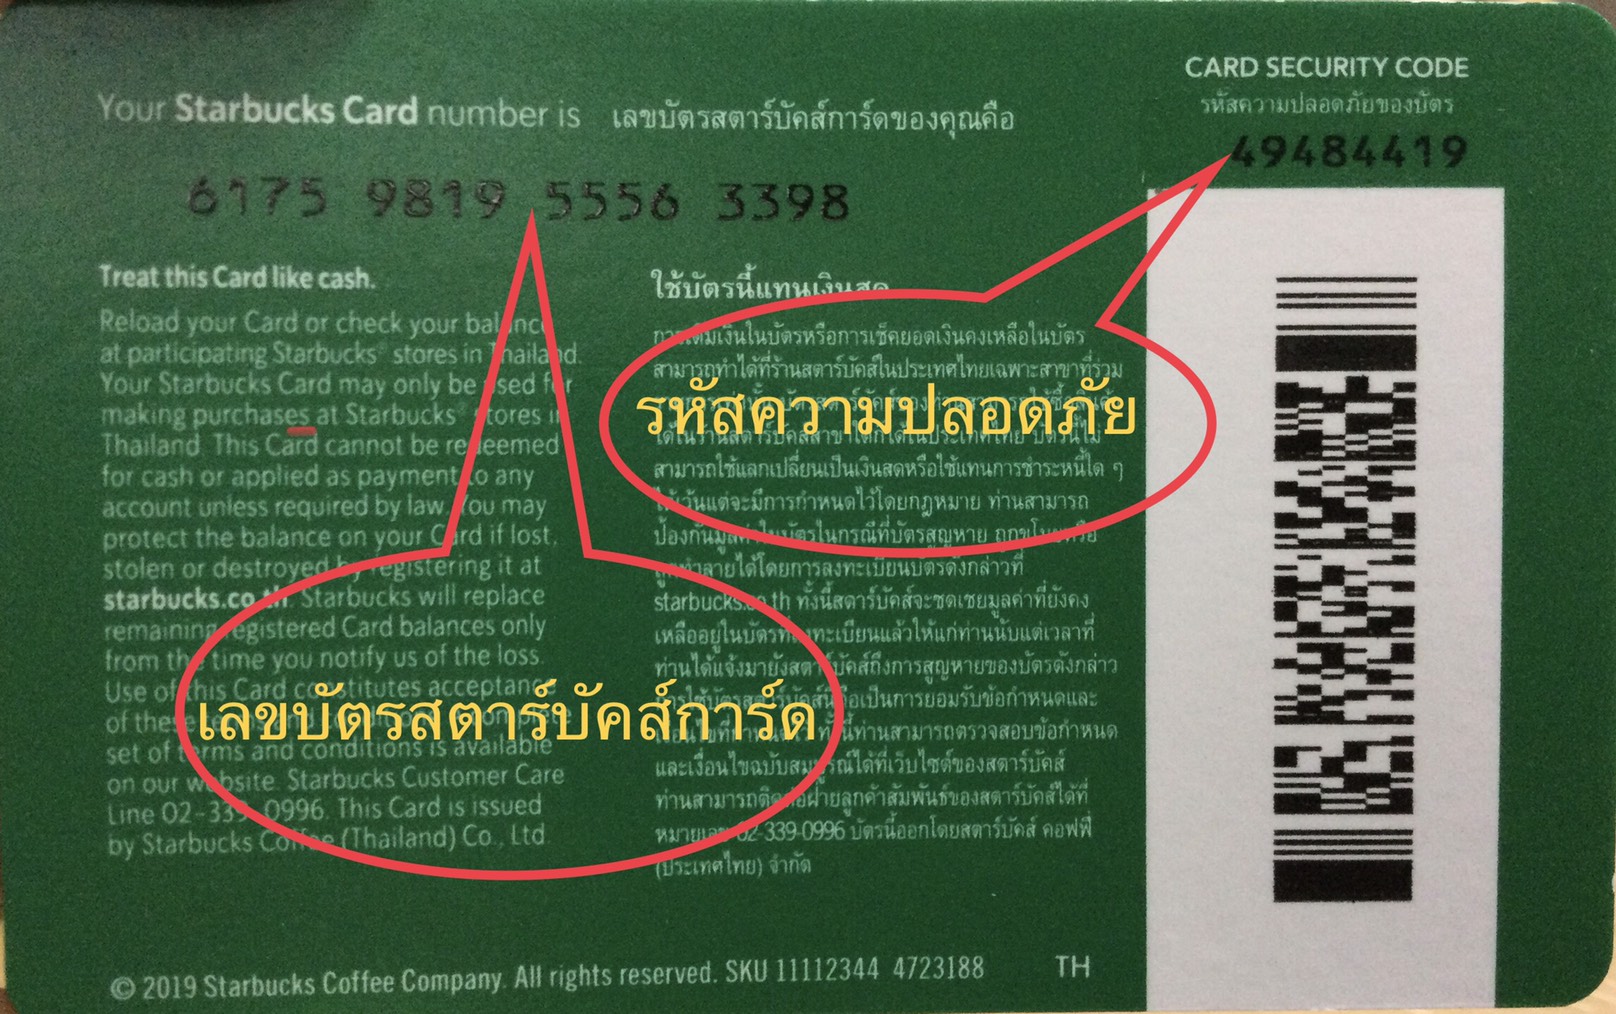 รายละเอียดเพิ่มเติมเกี่ยวกับ Starbucks card มูลค่า 500 บาท ((ส่งรหัสทางแชทเท่านั้น ))